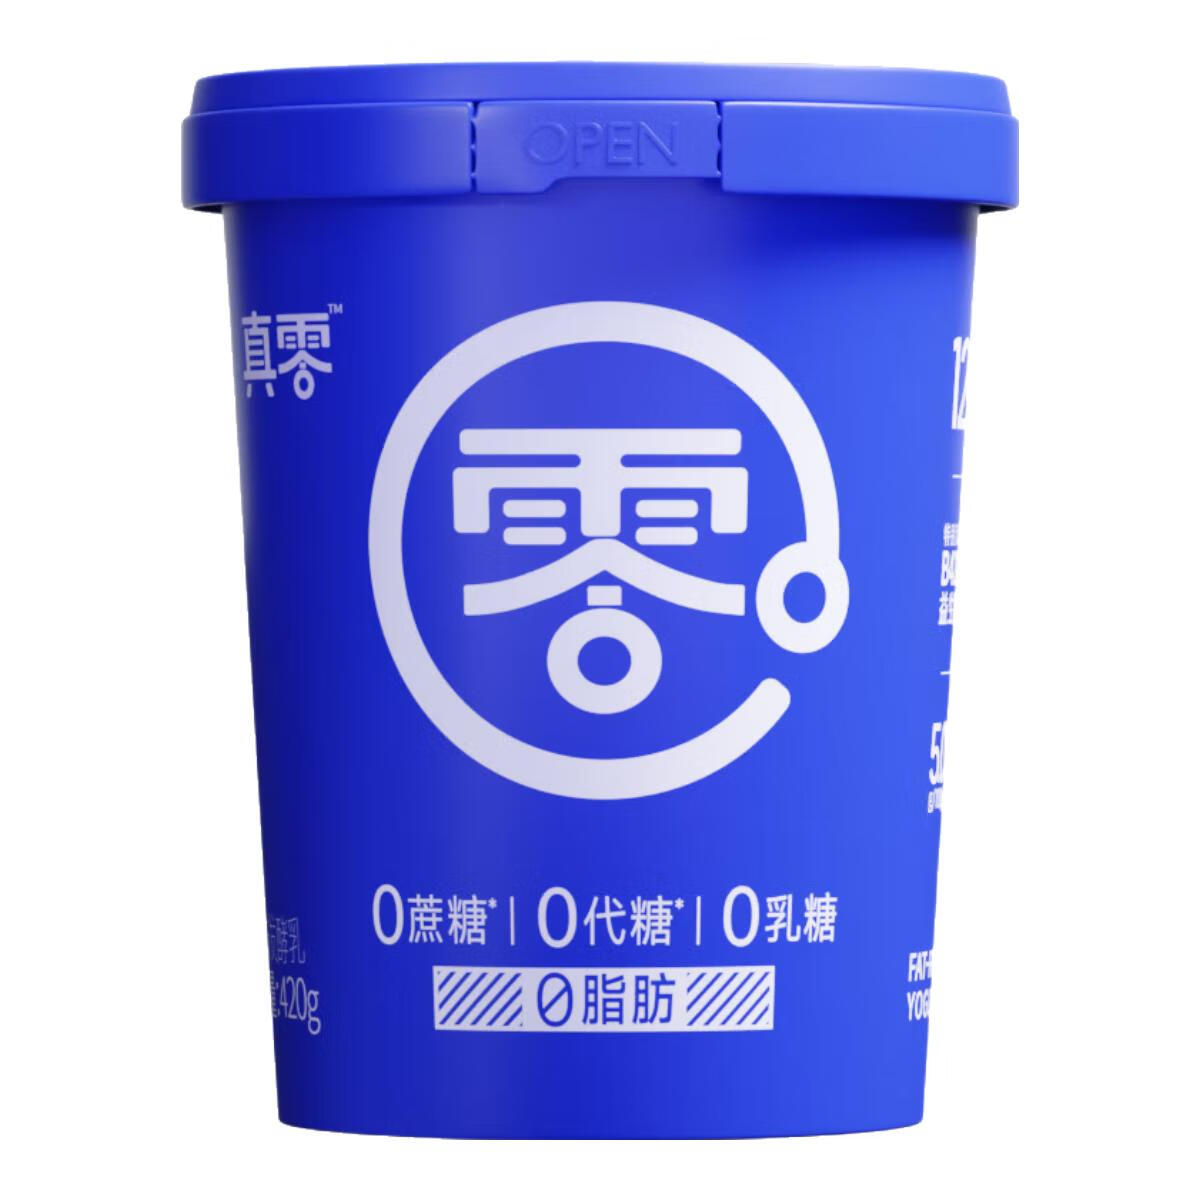 真零 小蓝罐酸奶 20g*4罐 64.9元（定金15元）